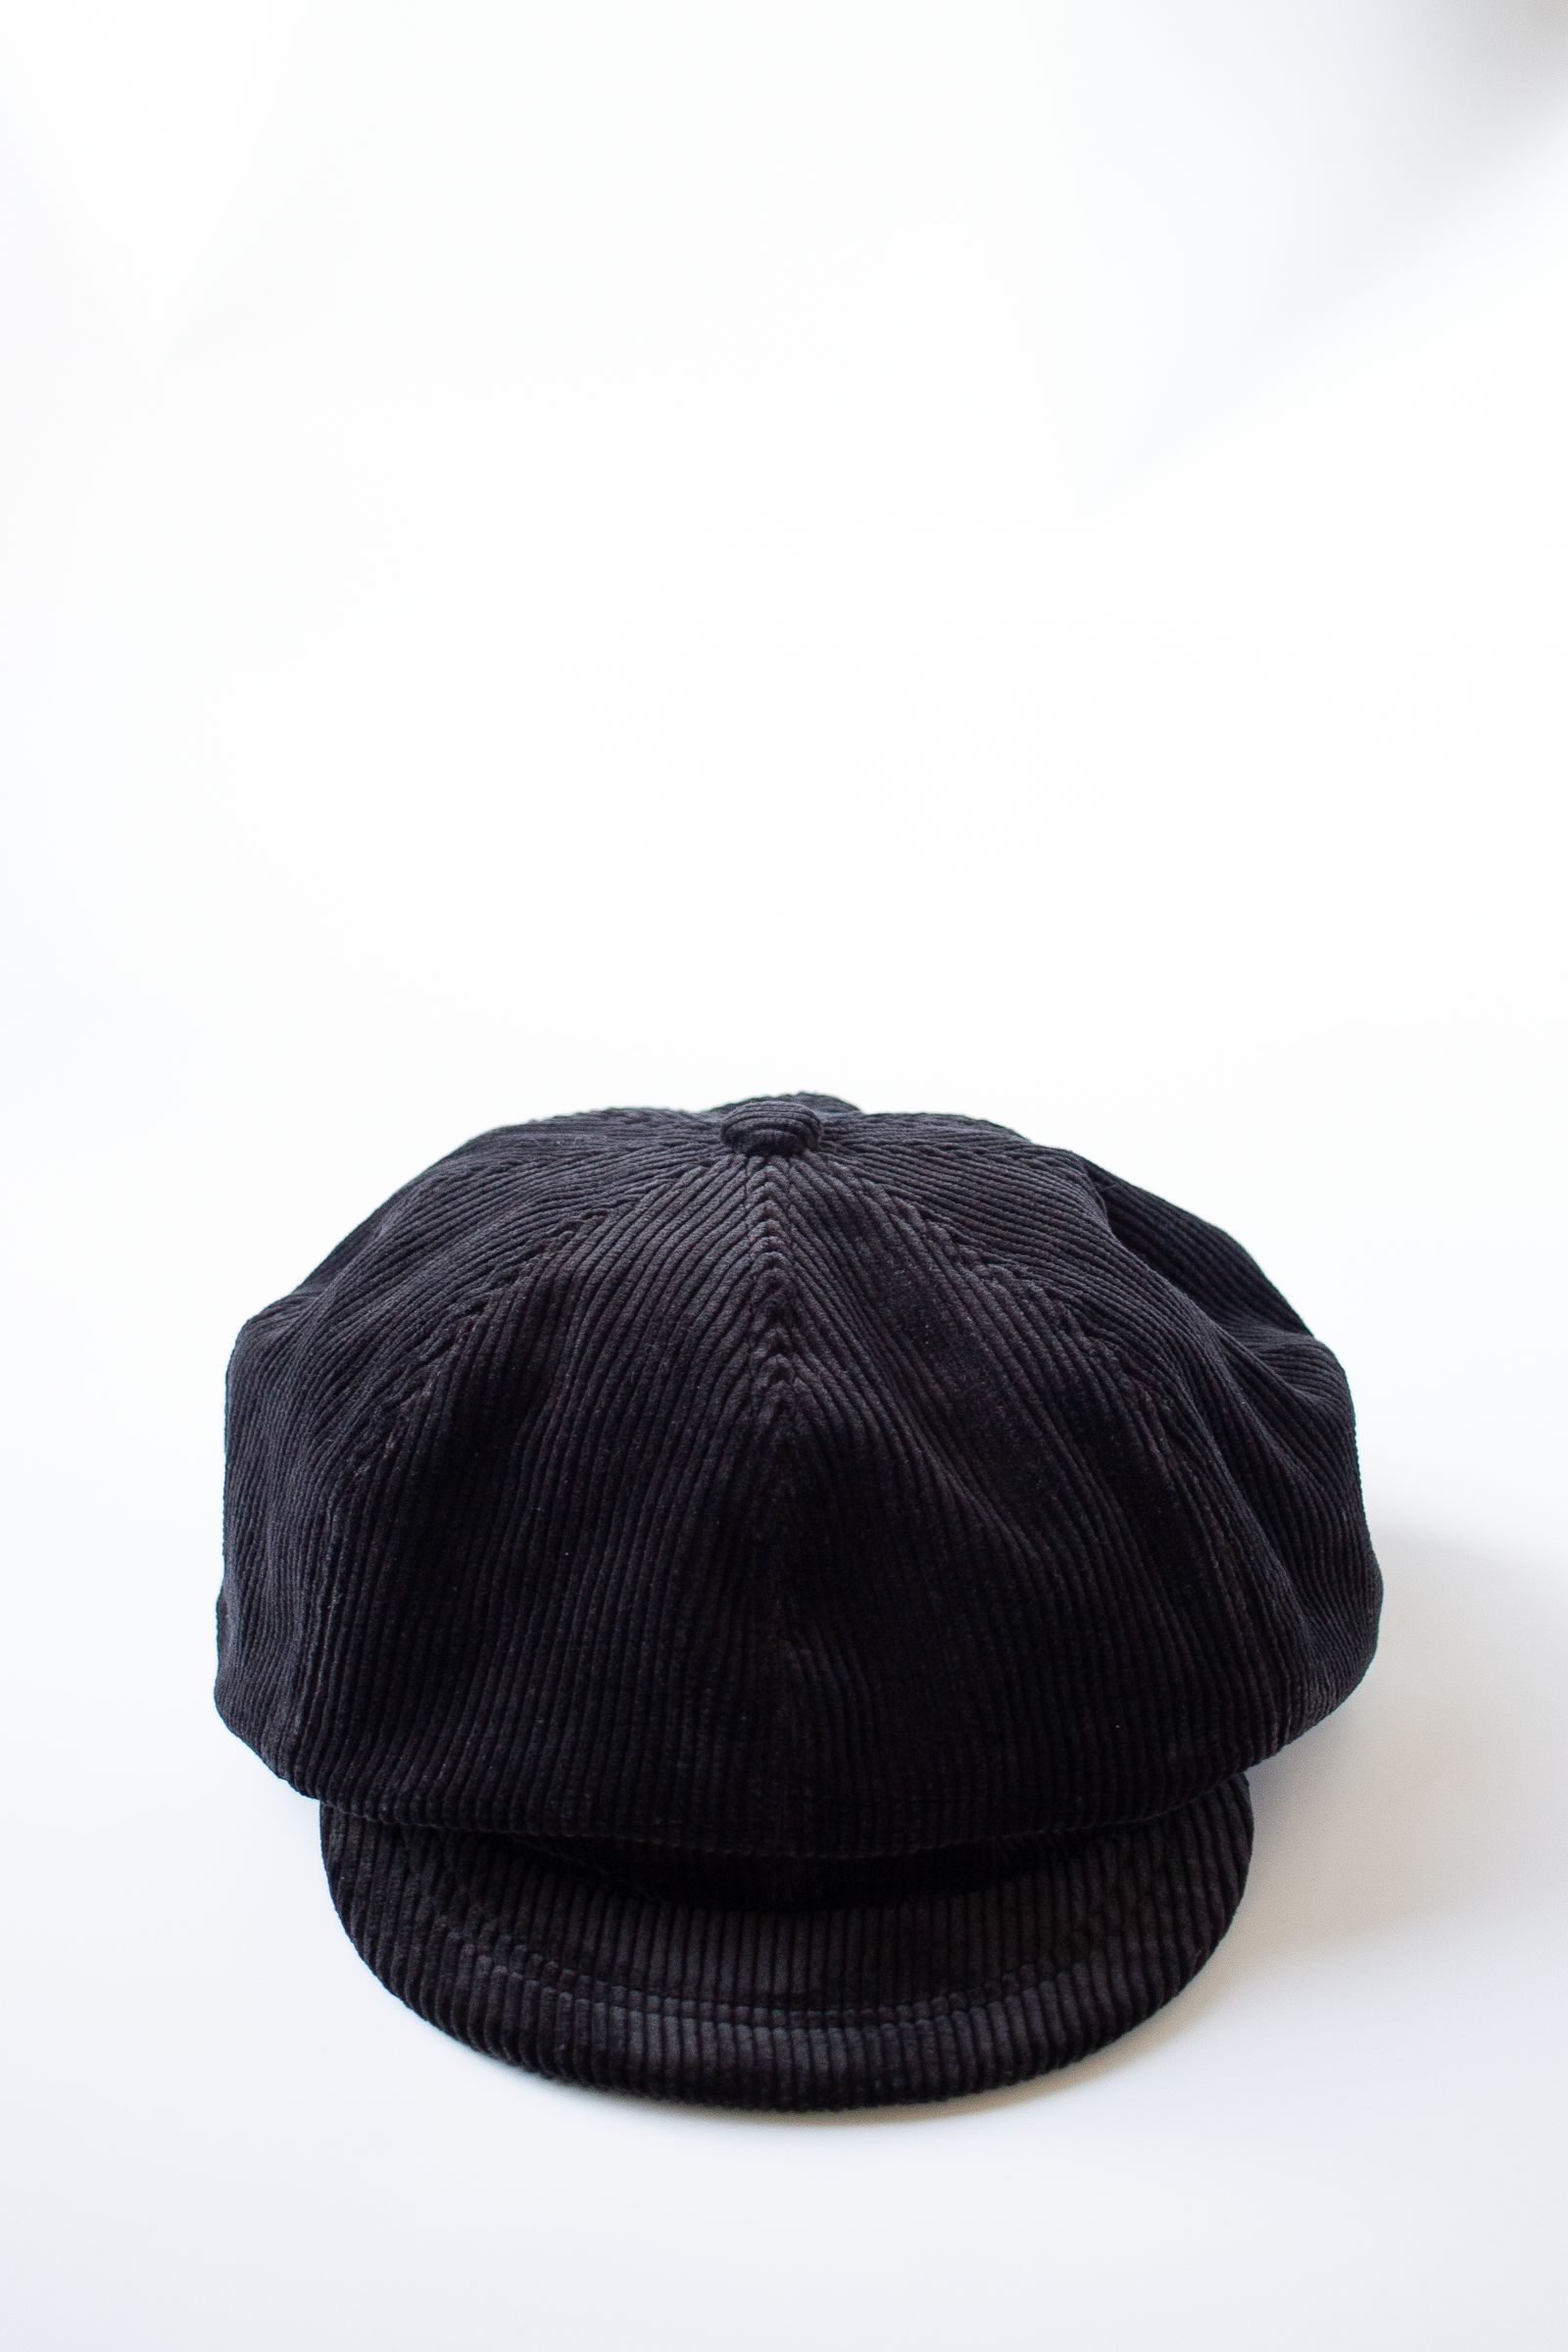 新品】kinema 帽子 ベレー帽 PABLO VINCI - 帽子